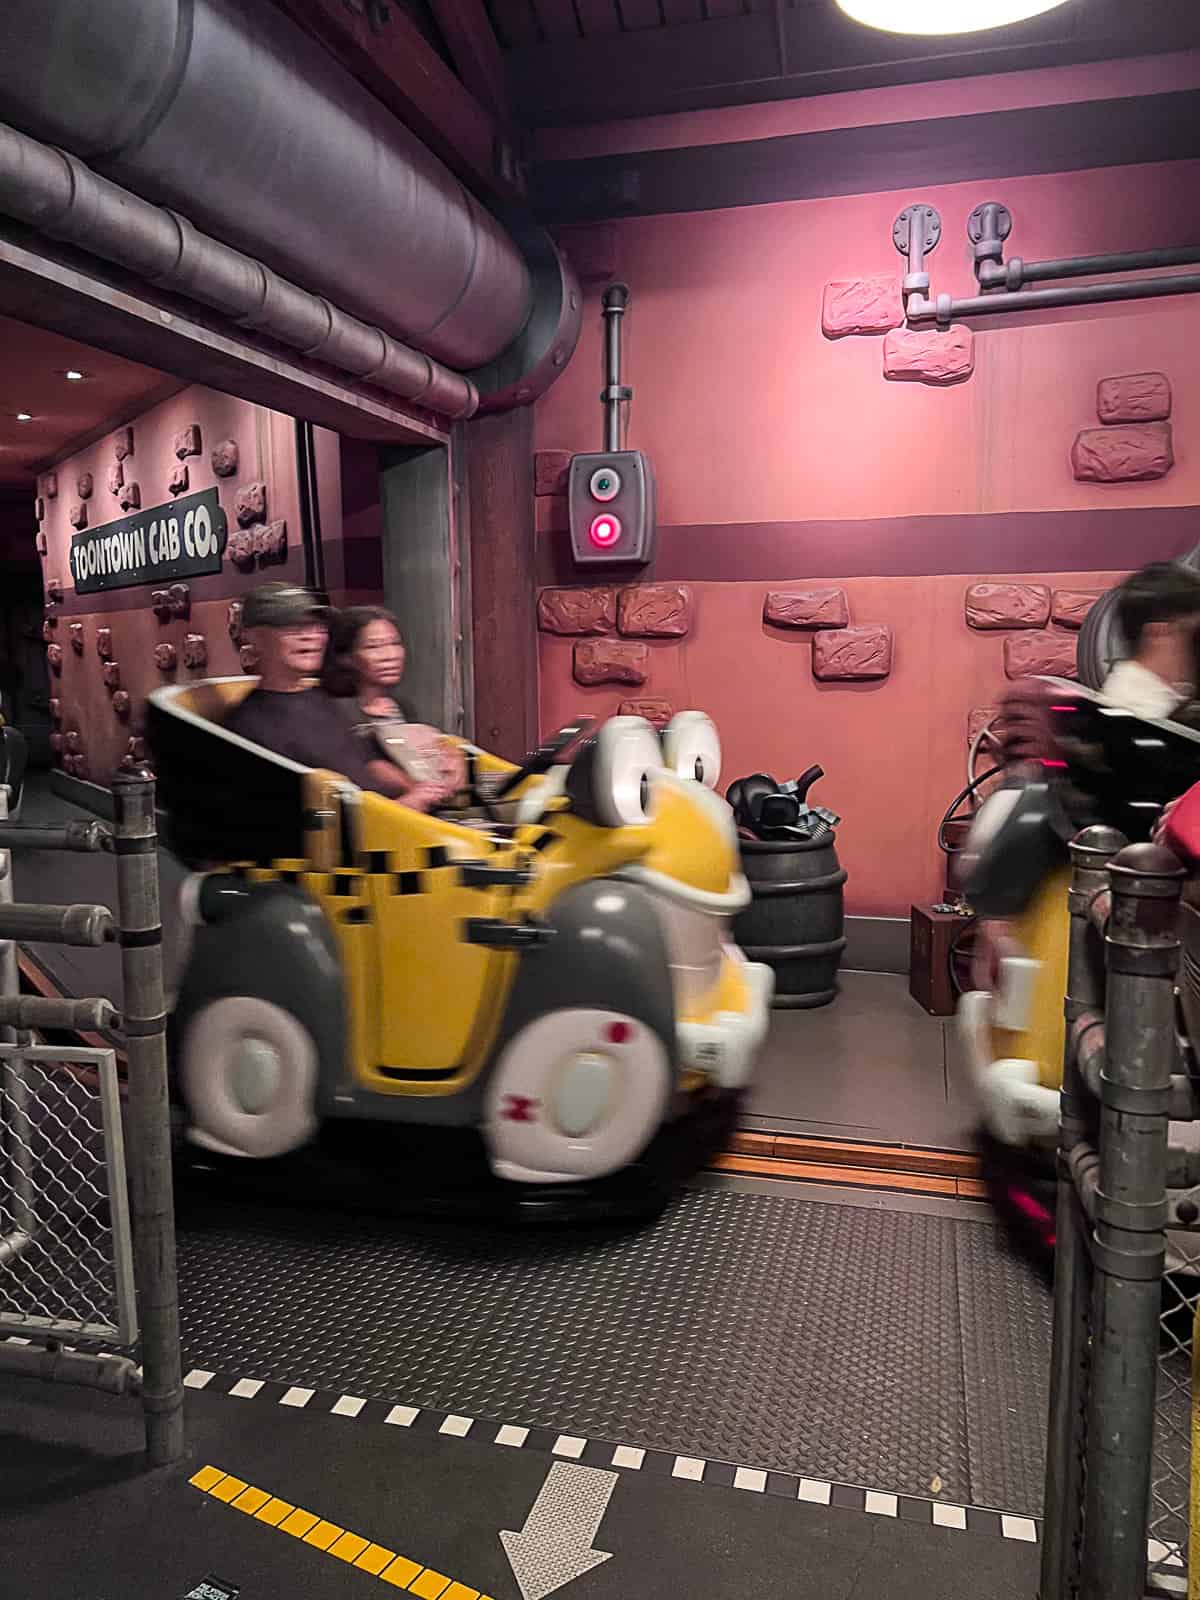 Roger Rabbit’s ride in Disneyland